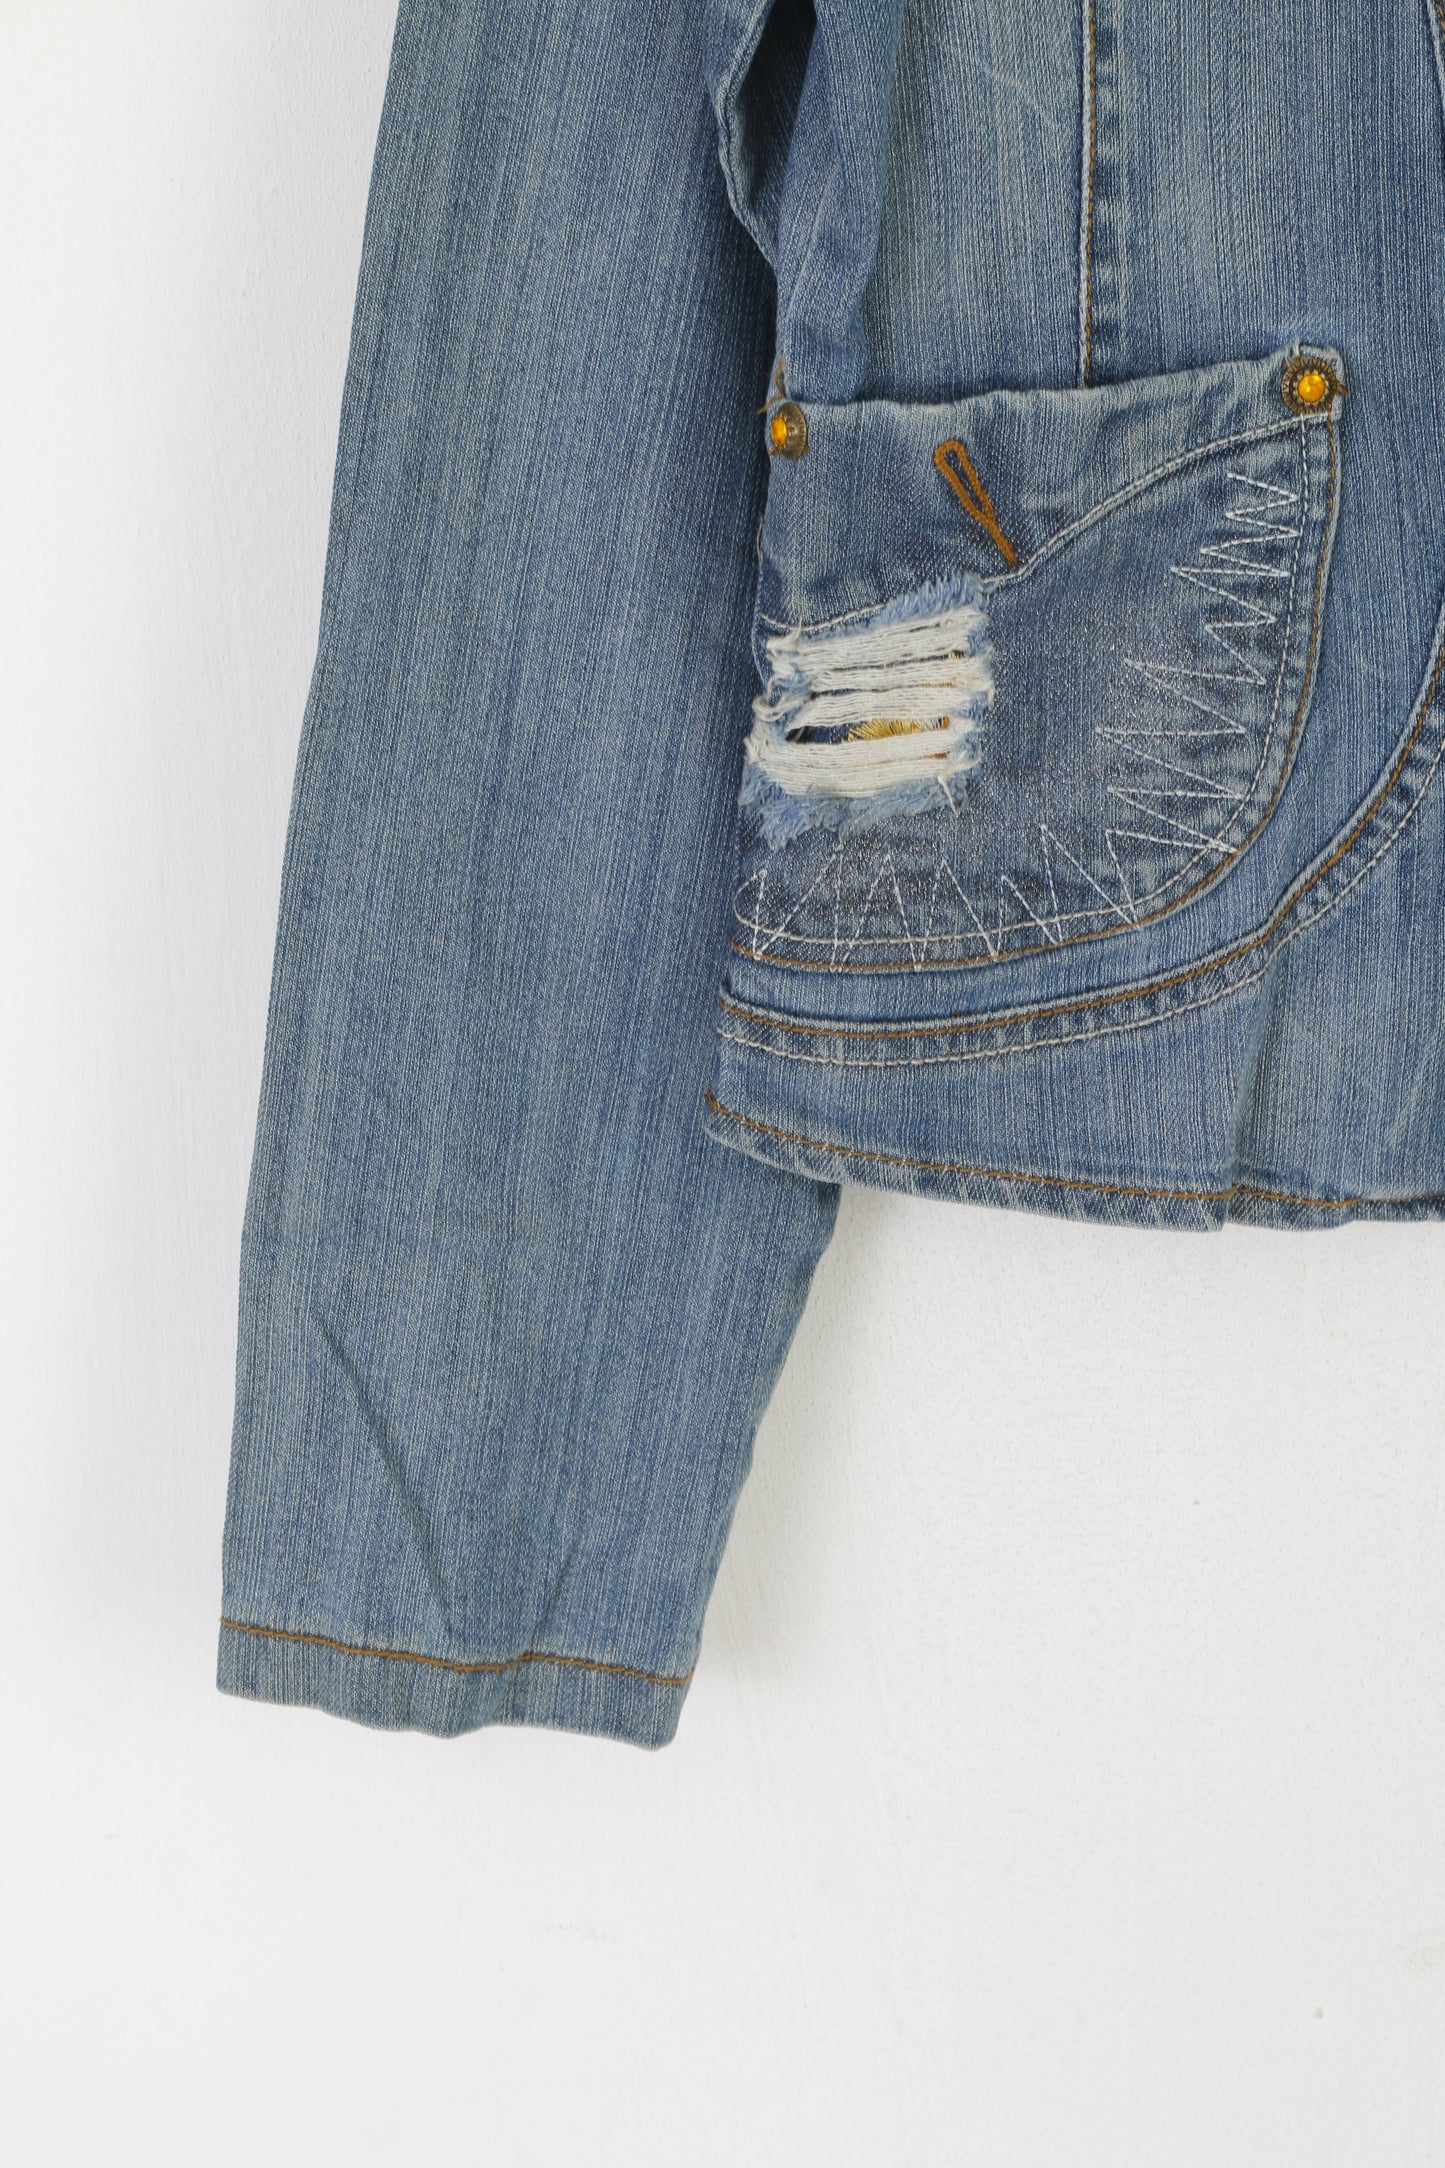 Vegoo Femme XL (M) Veste en Jean Bleu Vintage Paillettes Jeans Boutons Dorés Blazer